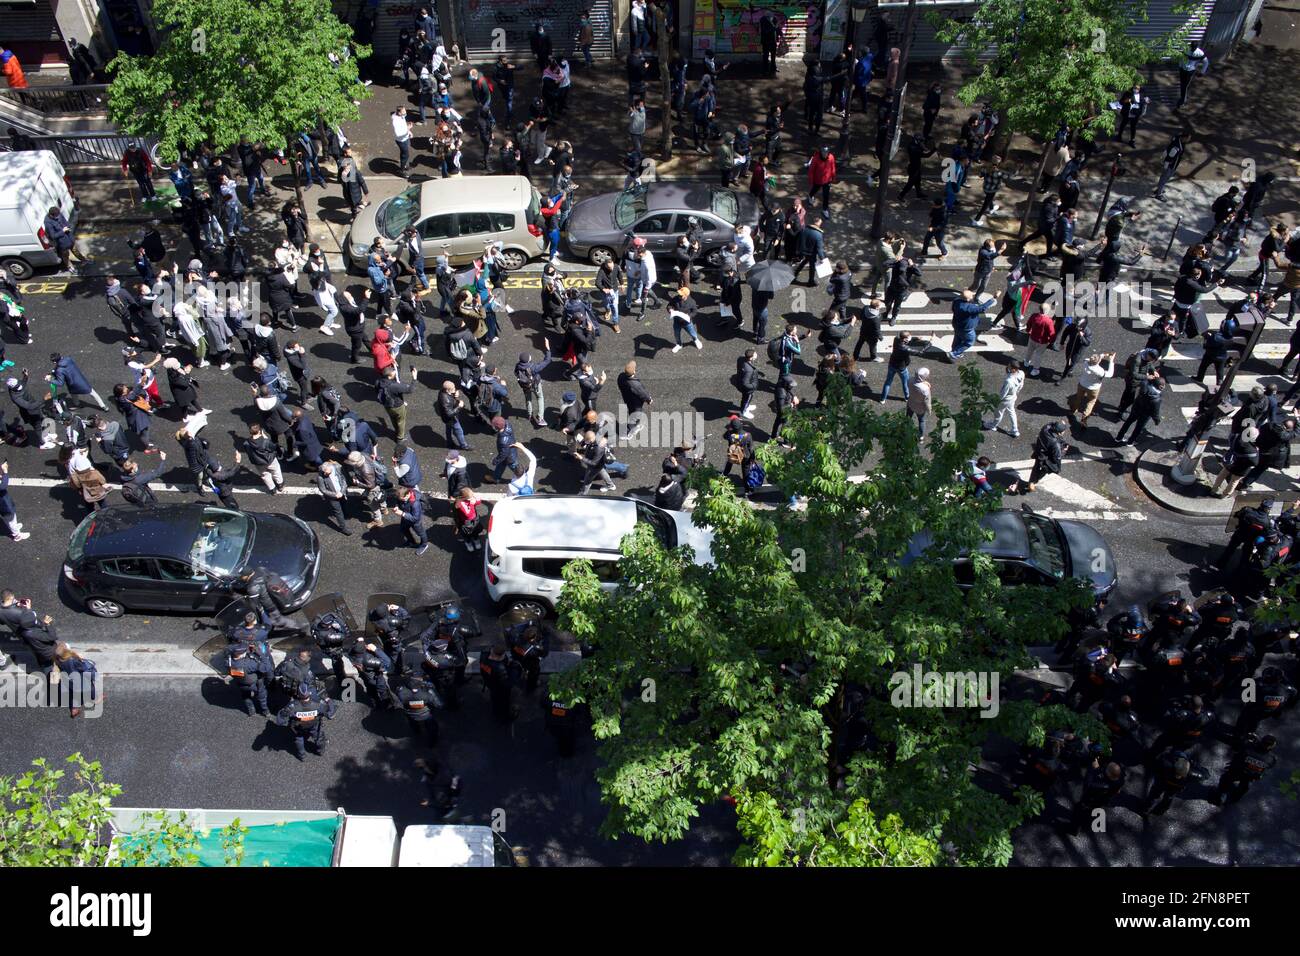 La police et les manifestants lors d'une manifestation pro-palestinienne, Boulevard Barbès, Paris, France, 15 mai, 2021 Banque D'Images